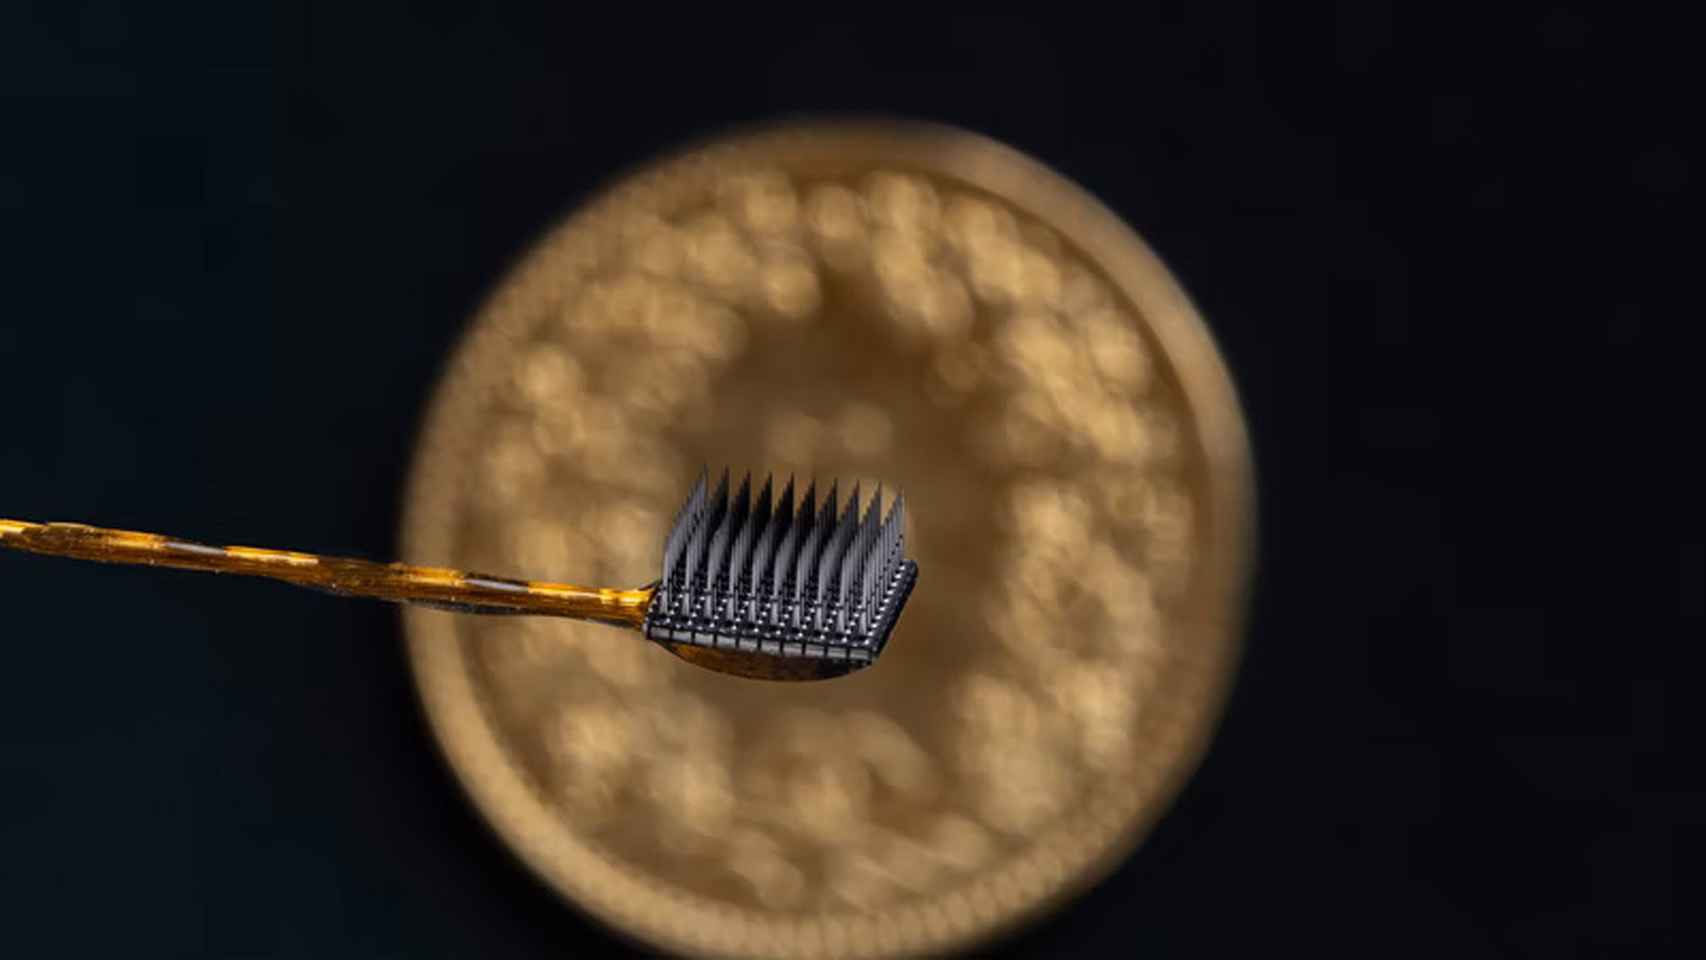 Uno de los microelectrodos implantados al paciente.